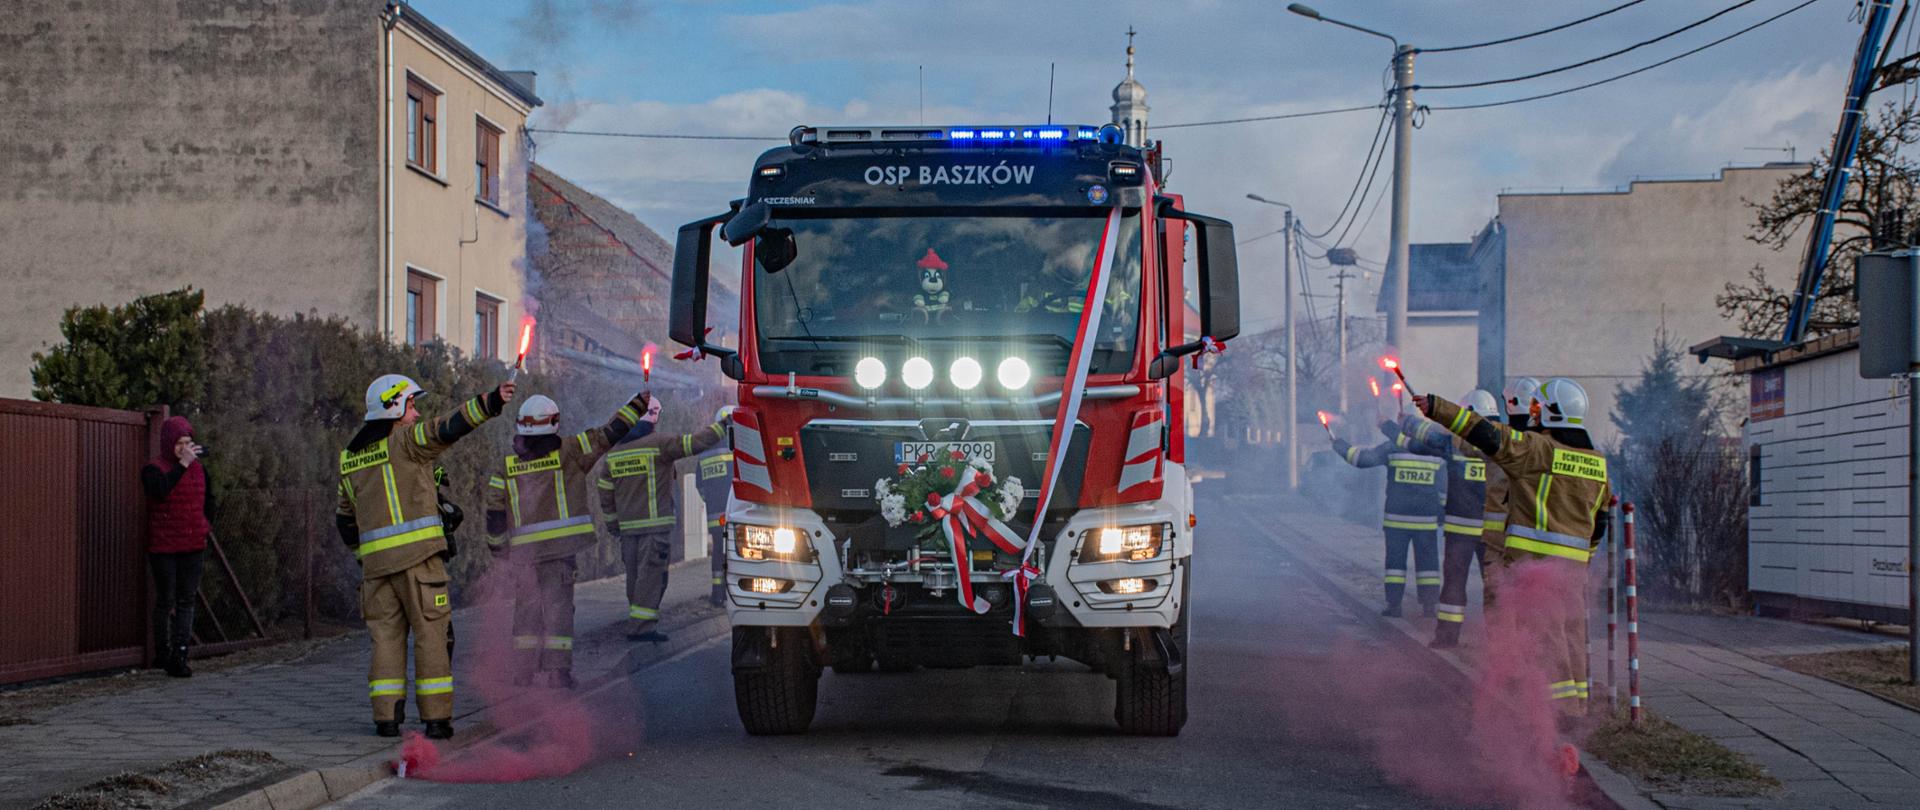 Na zdjęciu nowy pojazd jednostki OSP Baszków, który wjeżdża na teren miejscowości. Trasę dojazdu obstawiają druhowi jednostki w ubraniach bojowych trzymając w rękach race dymne podkreślając radość z doposażenia jednostki